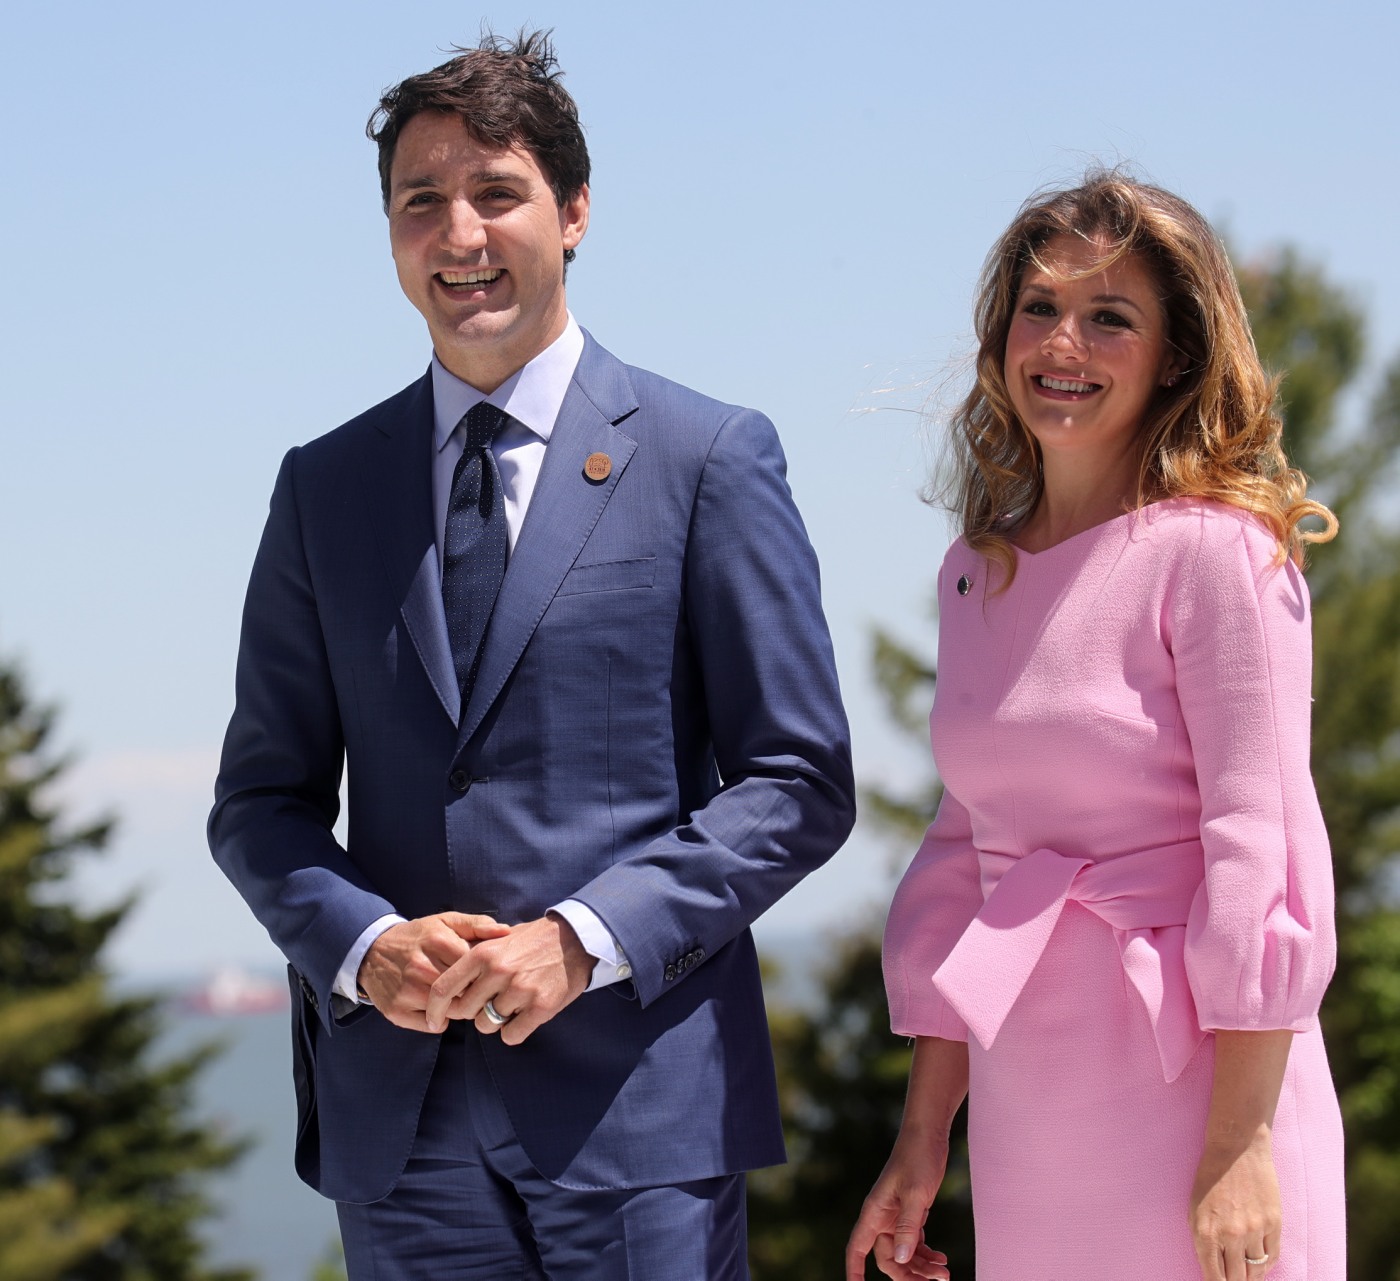 G7 Summit in Canada